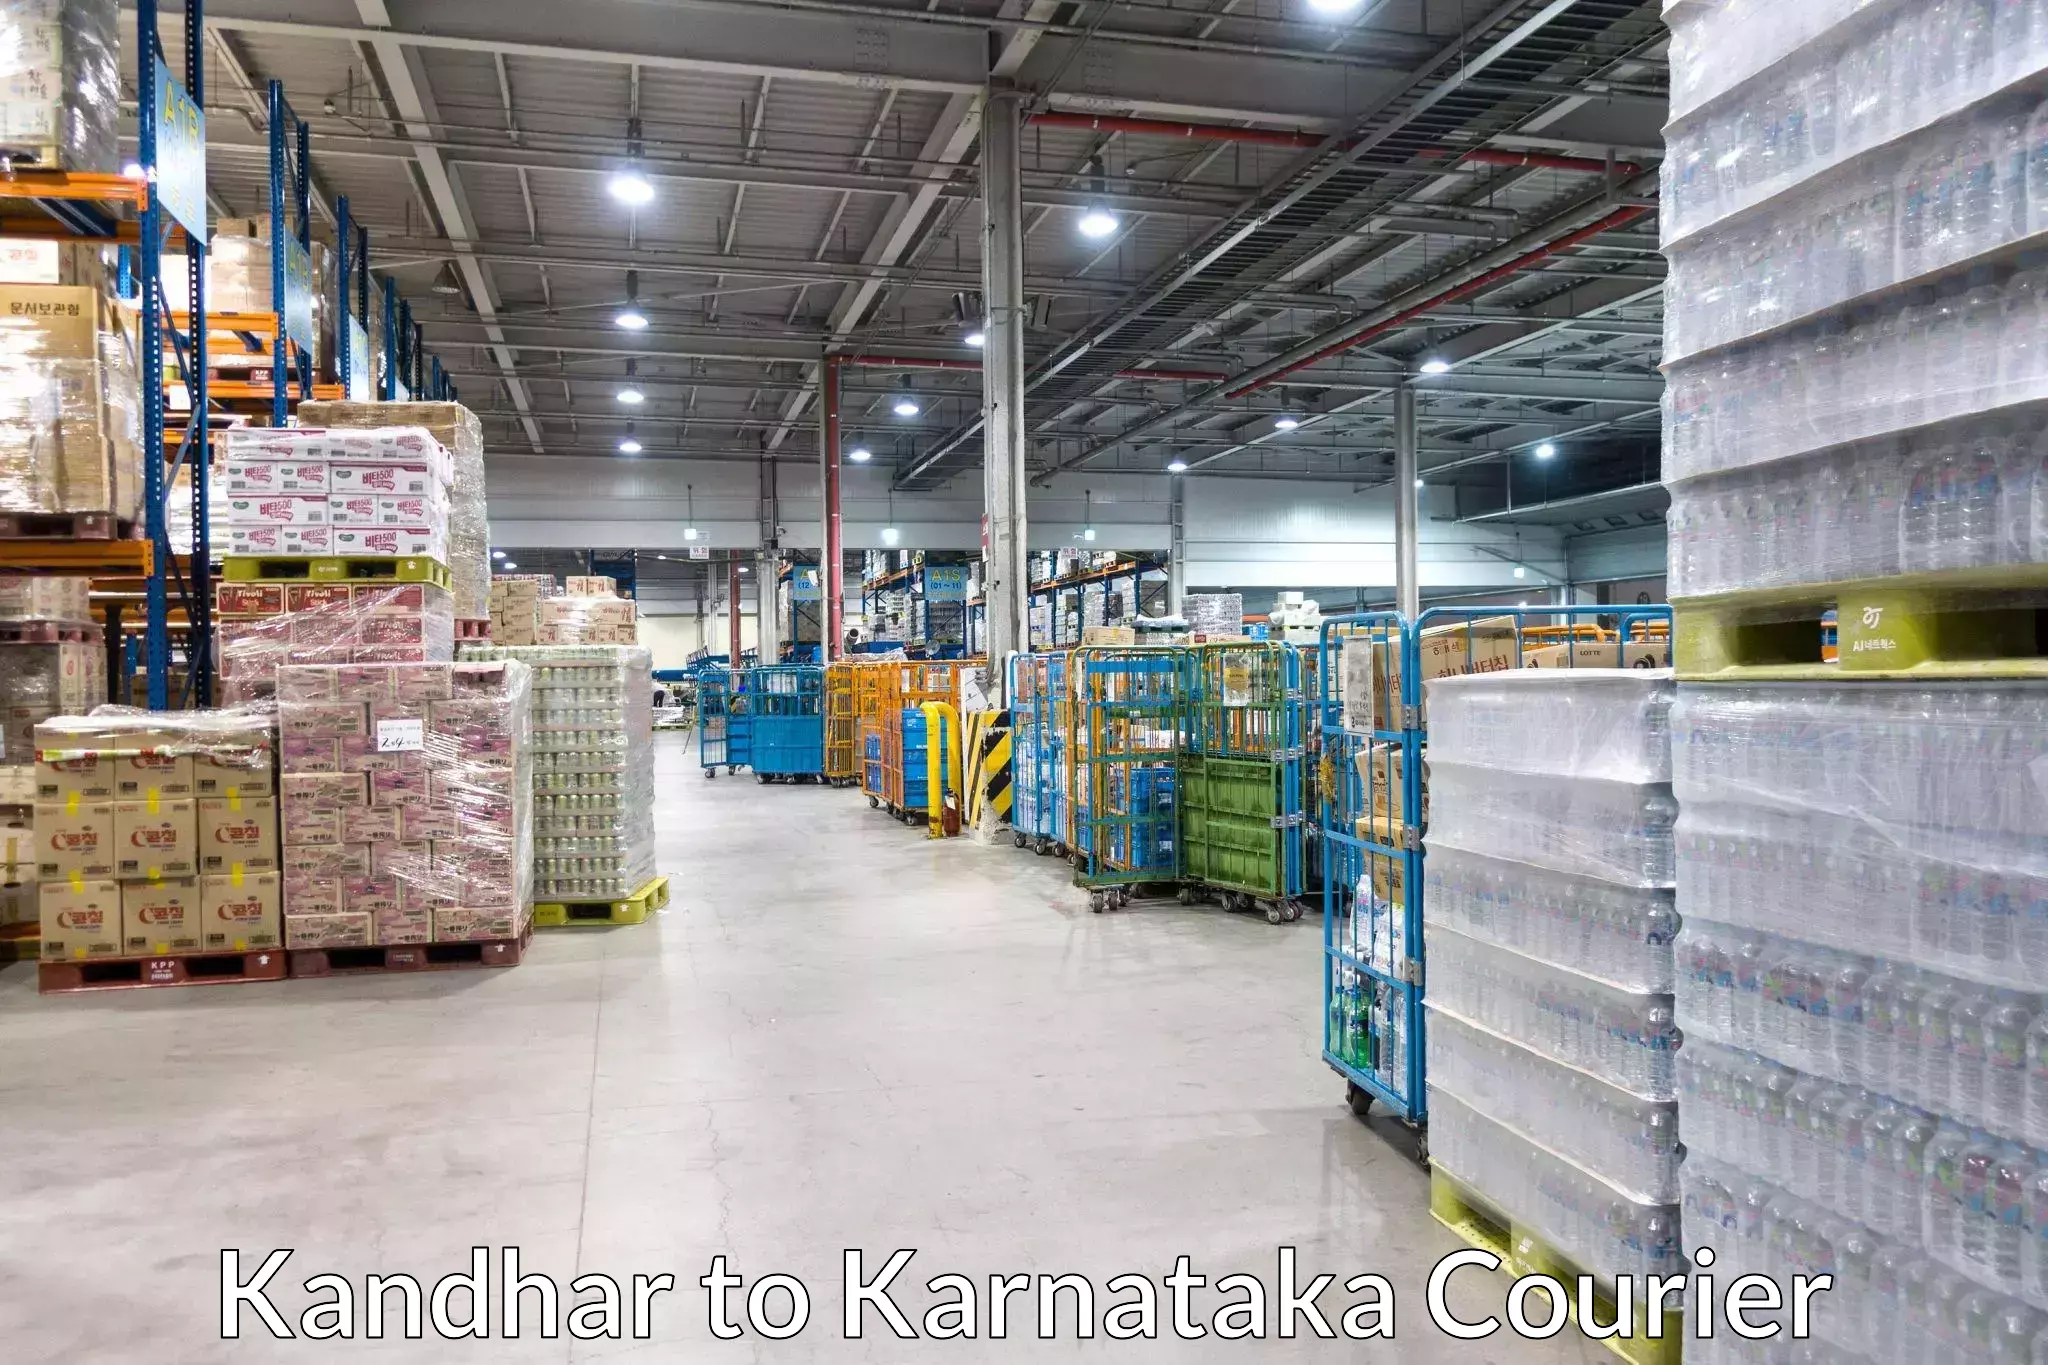 Global courier networks Kandhar to Basavanagudi